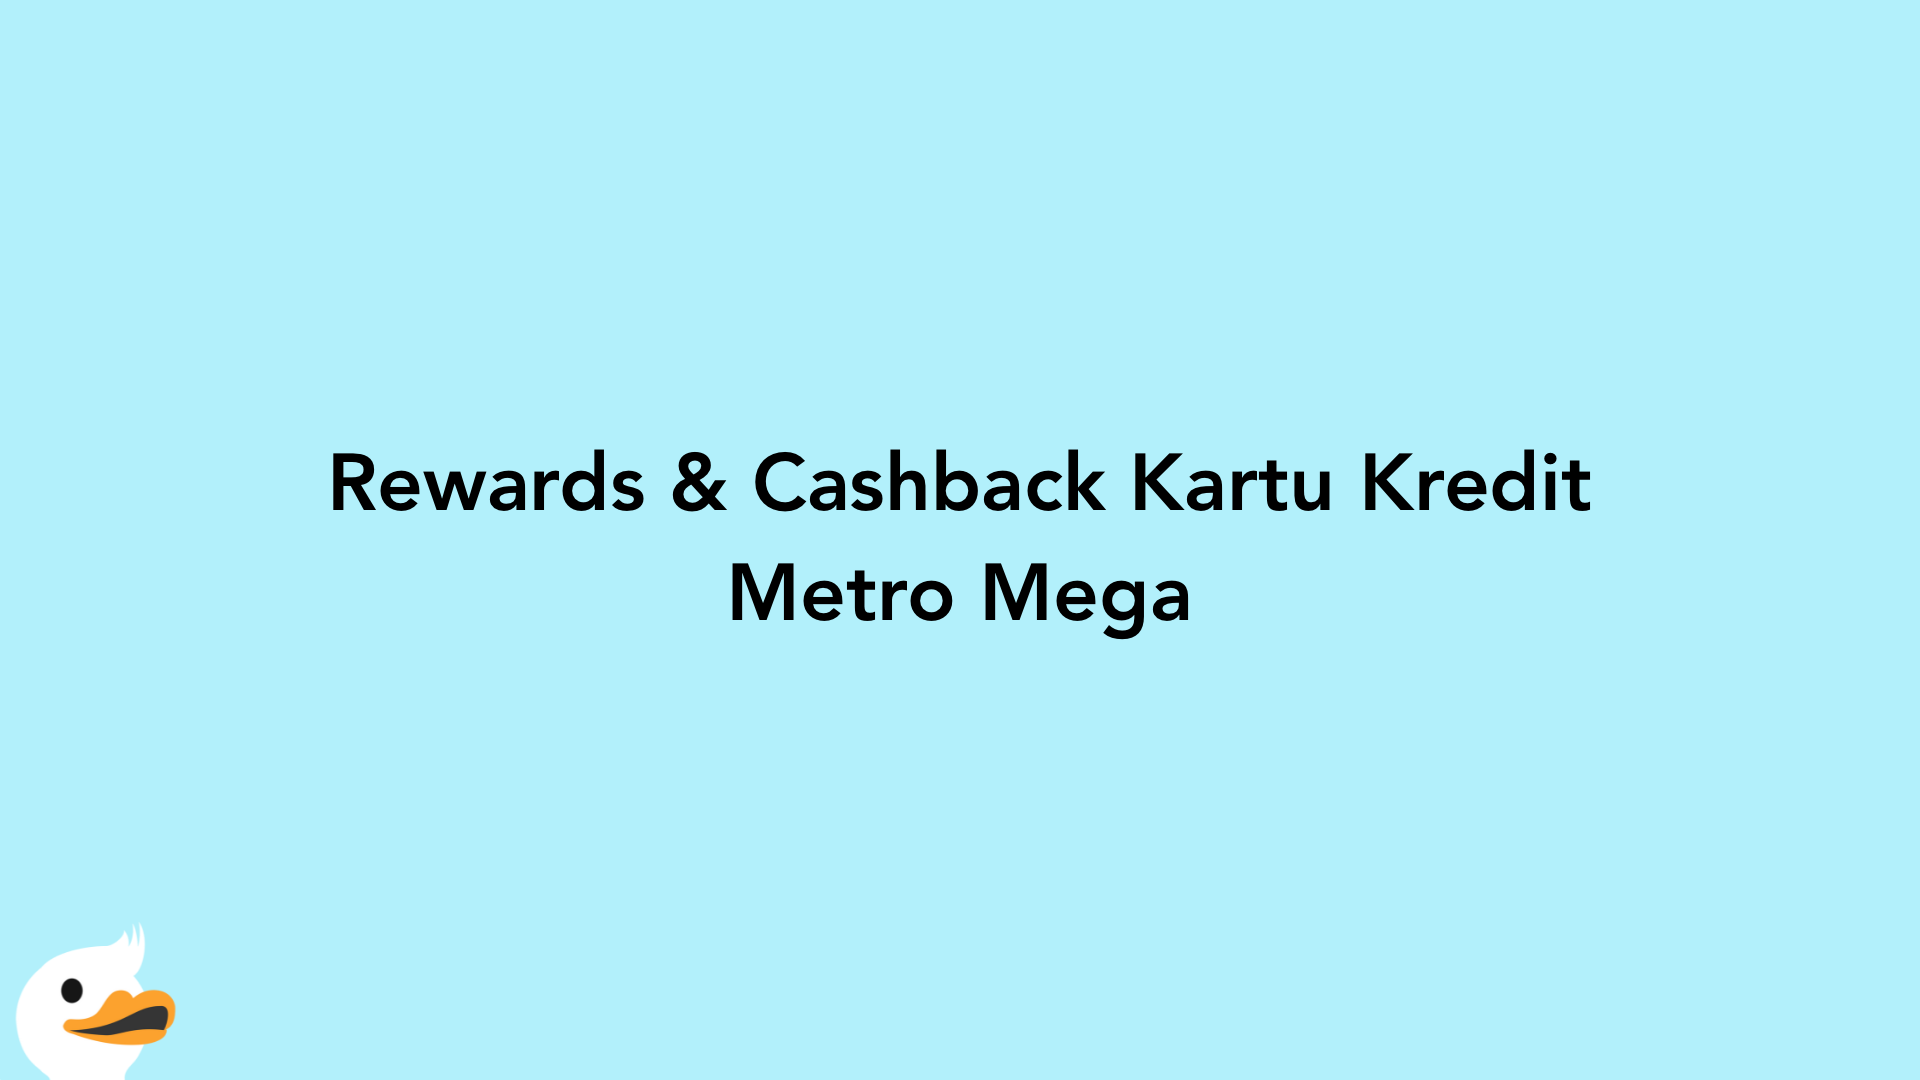 Rewards & Cashback Kartu Kredit Metro Mega